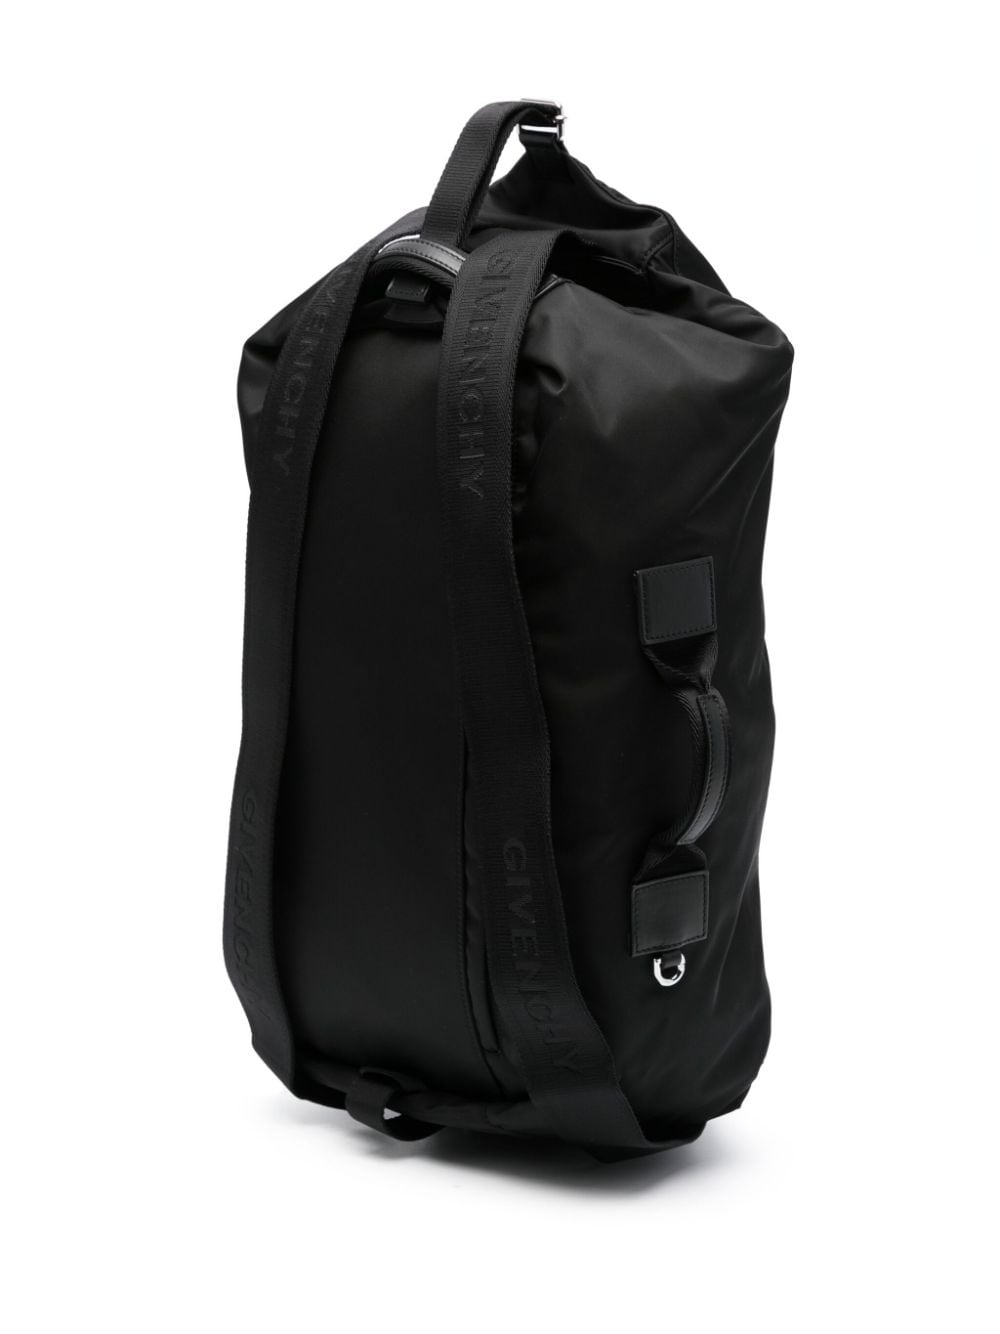 G-zip nylon backpack - 5